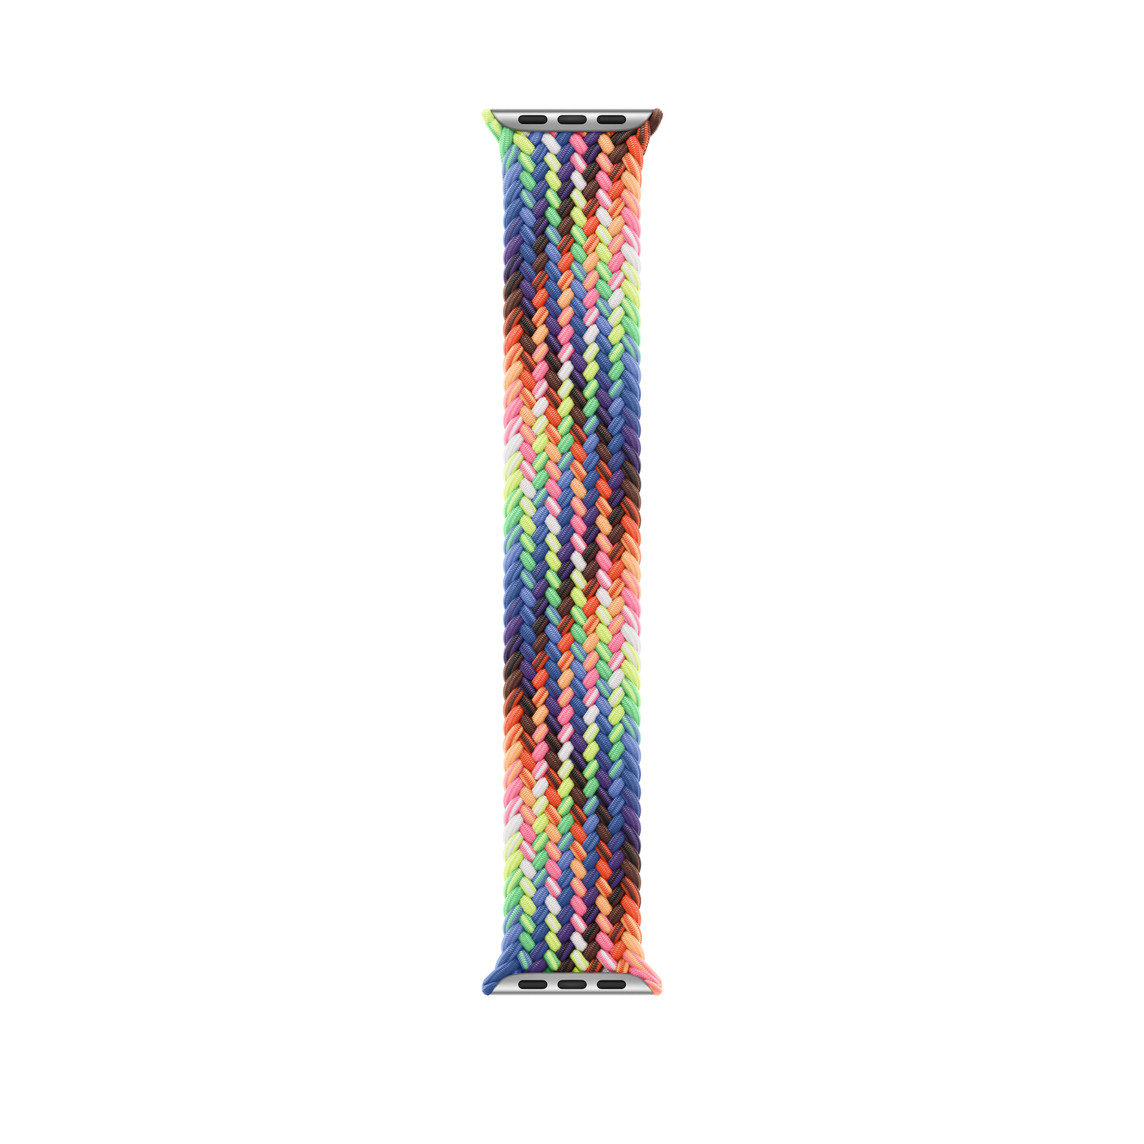 Bracelete Solo entrançada Pride Edition, linhas tecidas num conjunto de cores néon inspiradas na bandeira arco-íris Pride vibrante, sem fivelas nem fechos